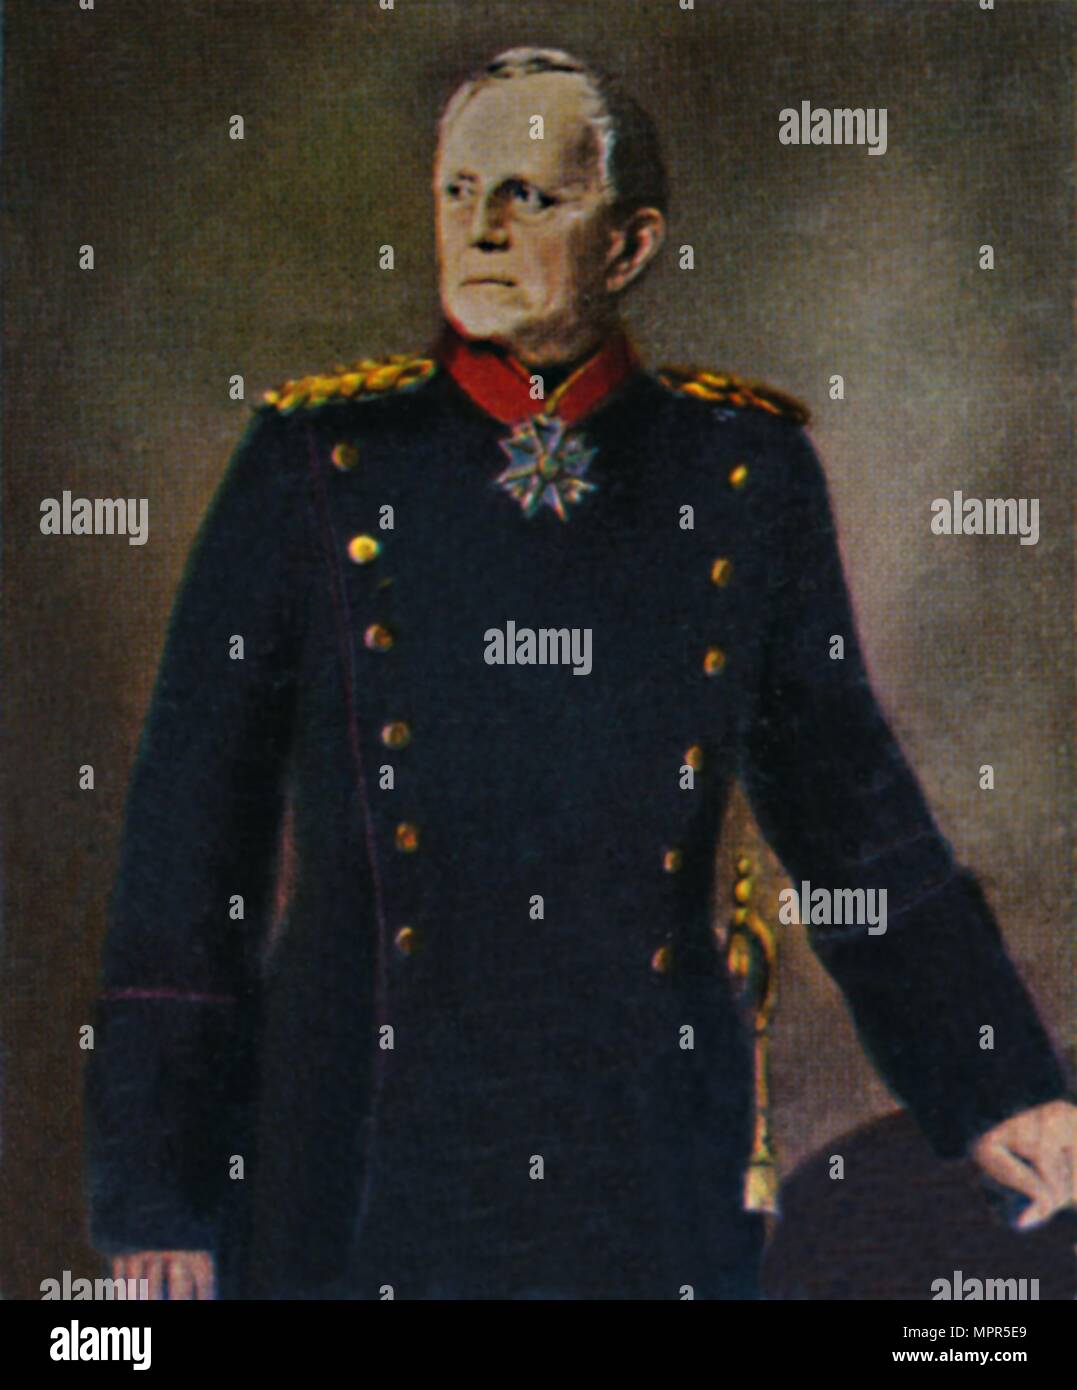 'Helmuth von Moltke 1800-1891. - Gemälde von Lenbach', 1934. Artist: Unknown. Stock Photo